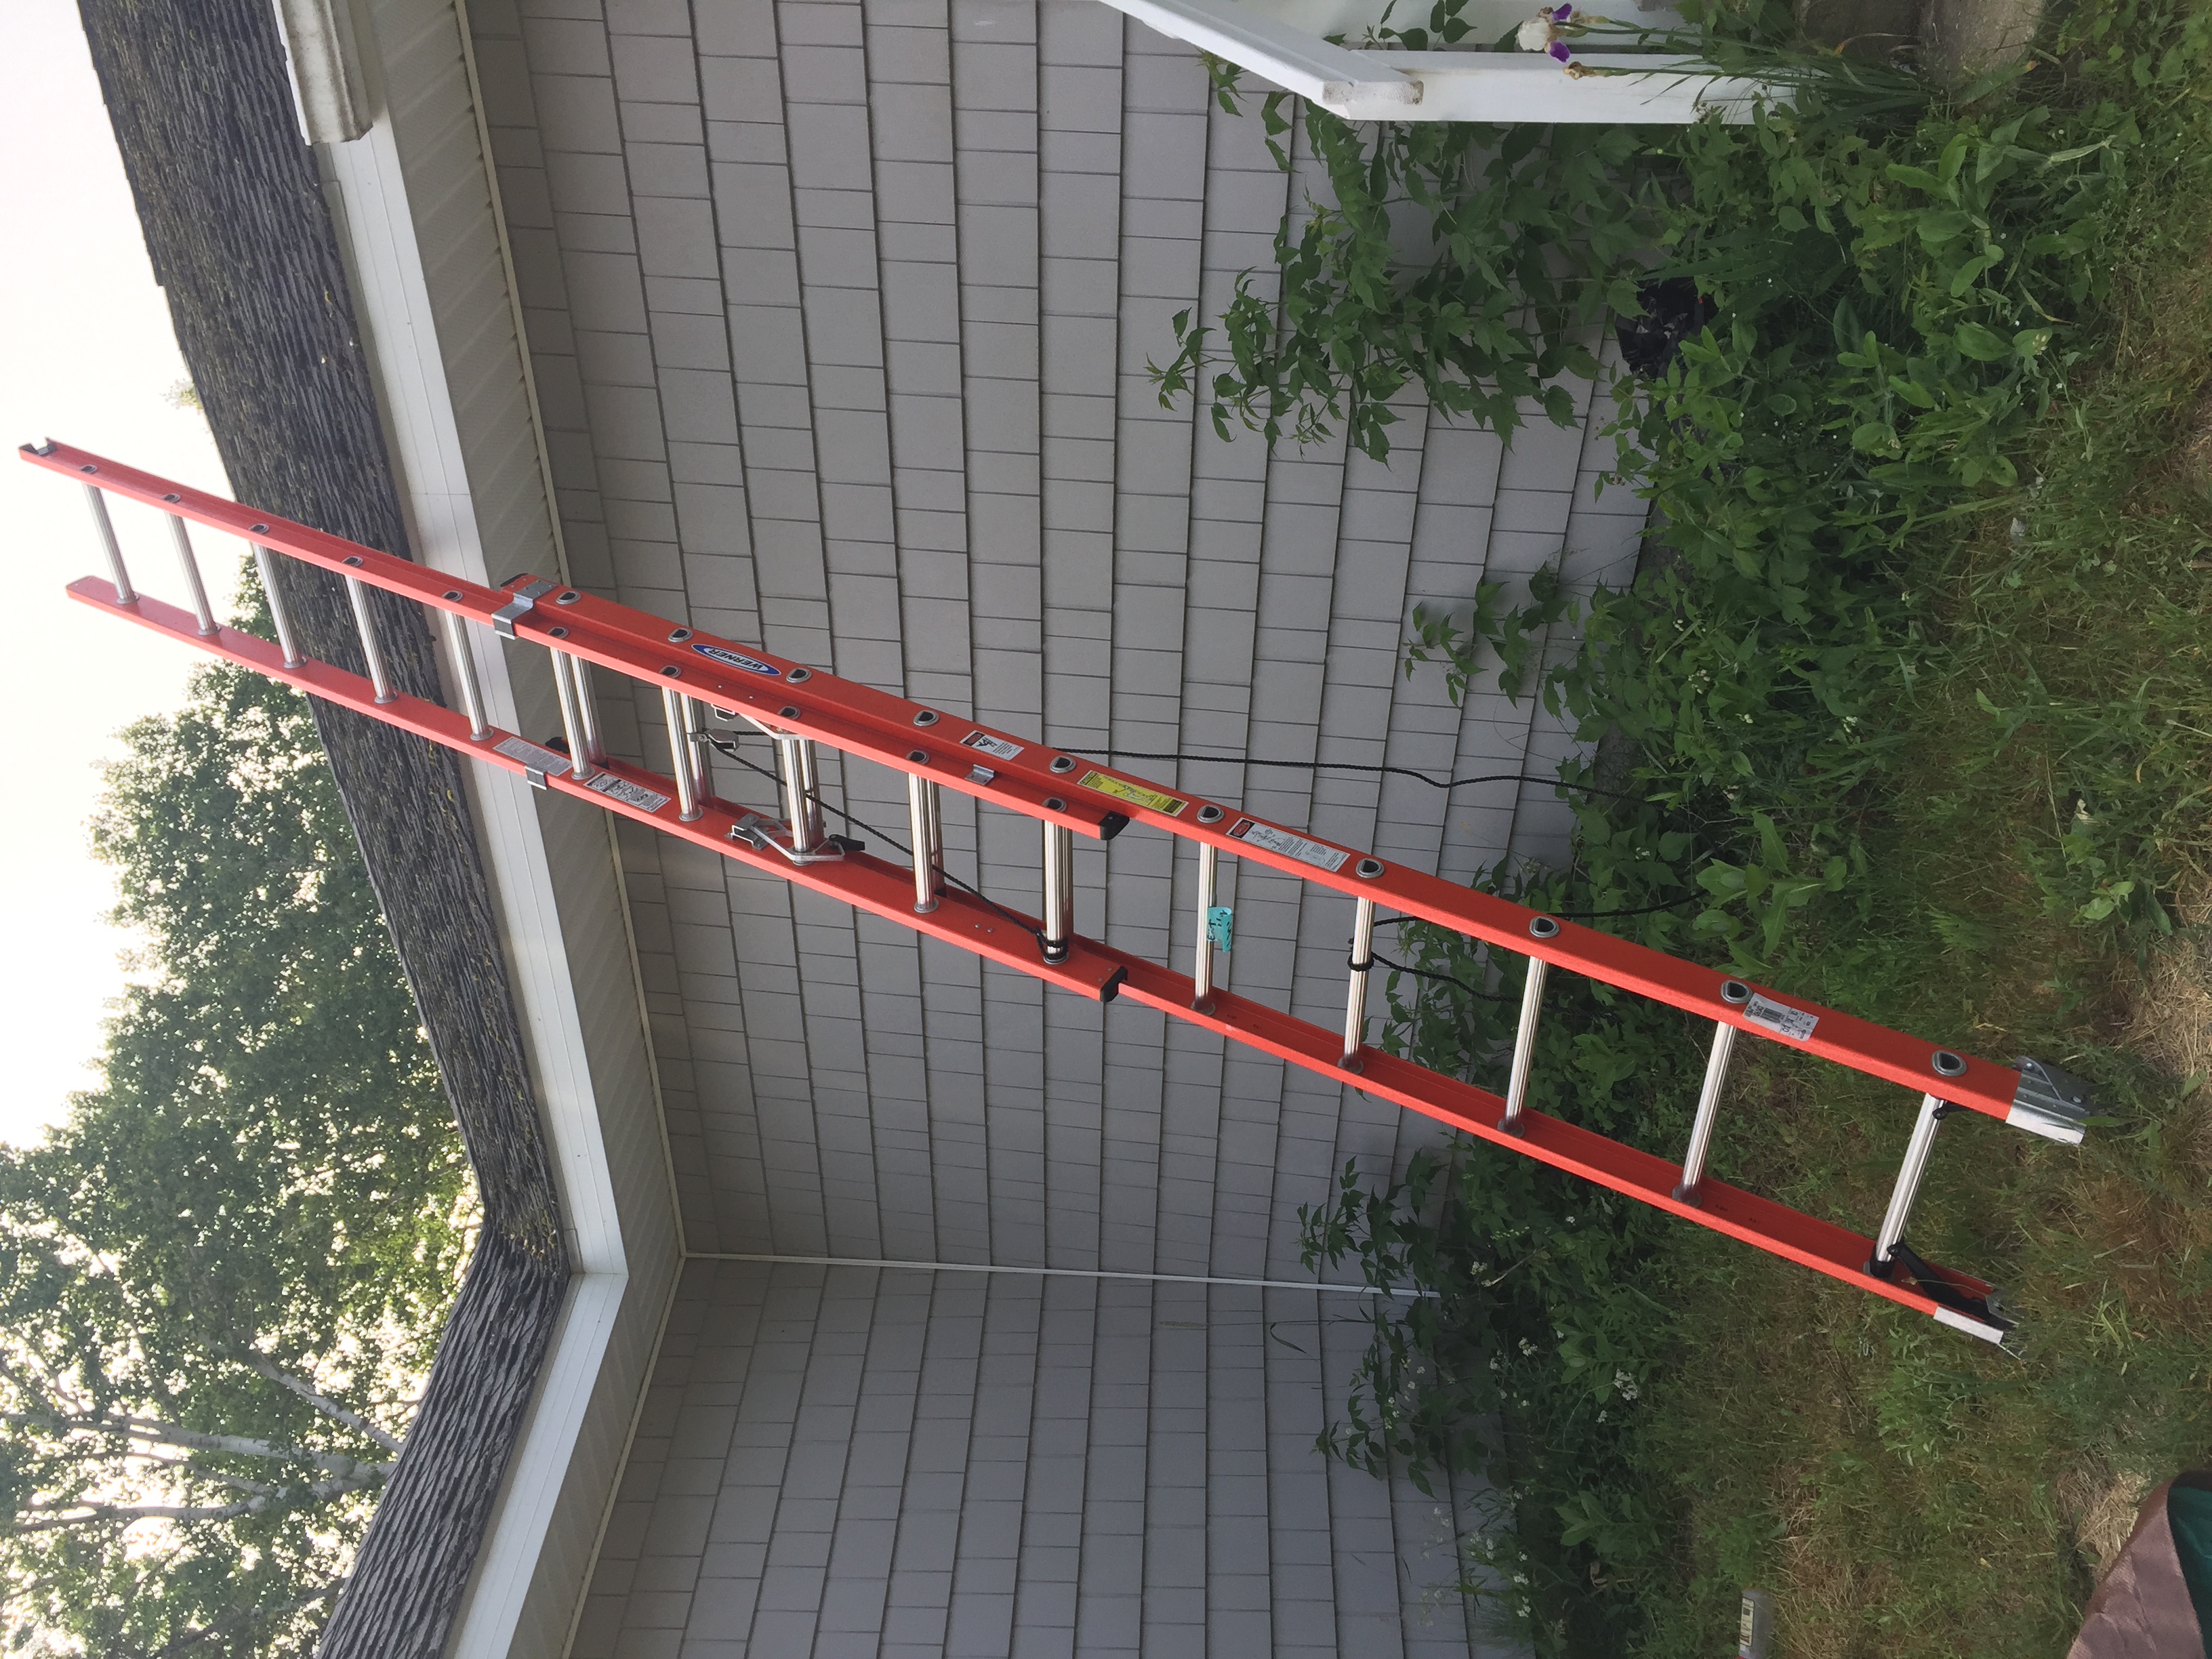 Werner 24’ extension ladder. $150.00 like new.